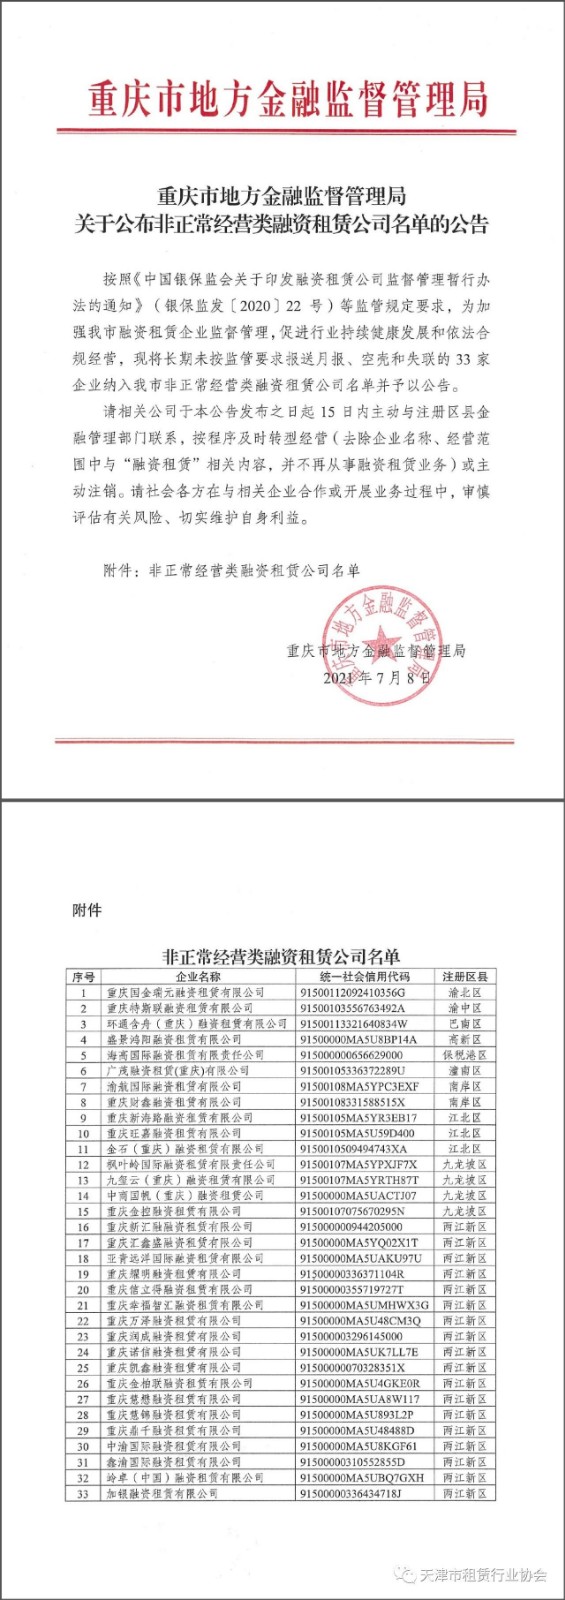 重庆市地方金融监督管理局关于公布非正常经营类融资租赁公司名单的公告